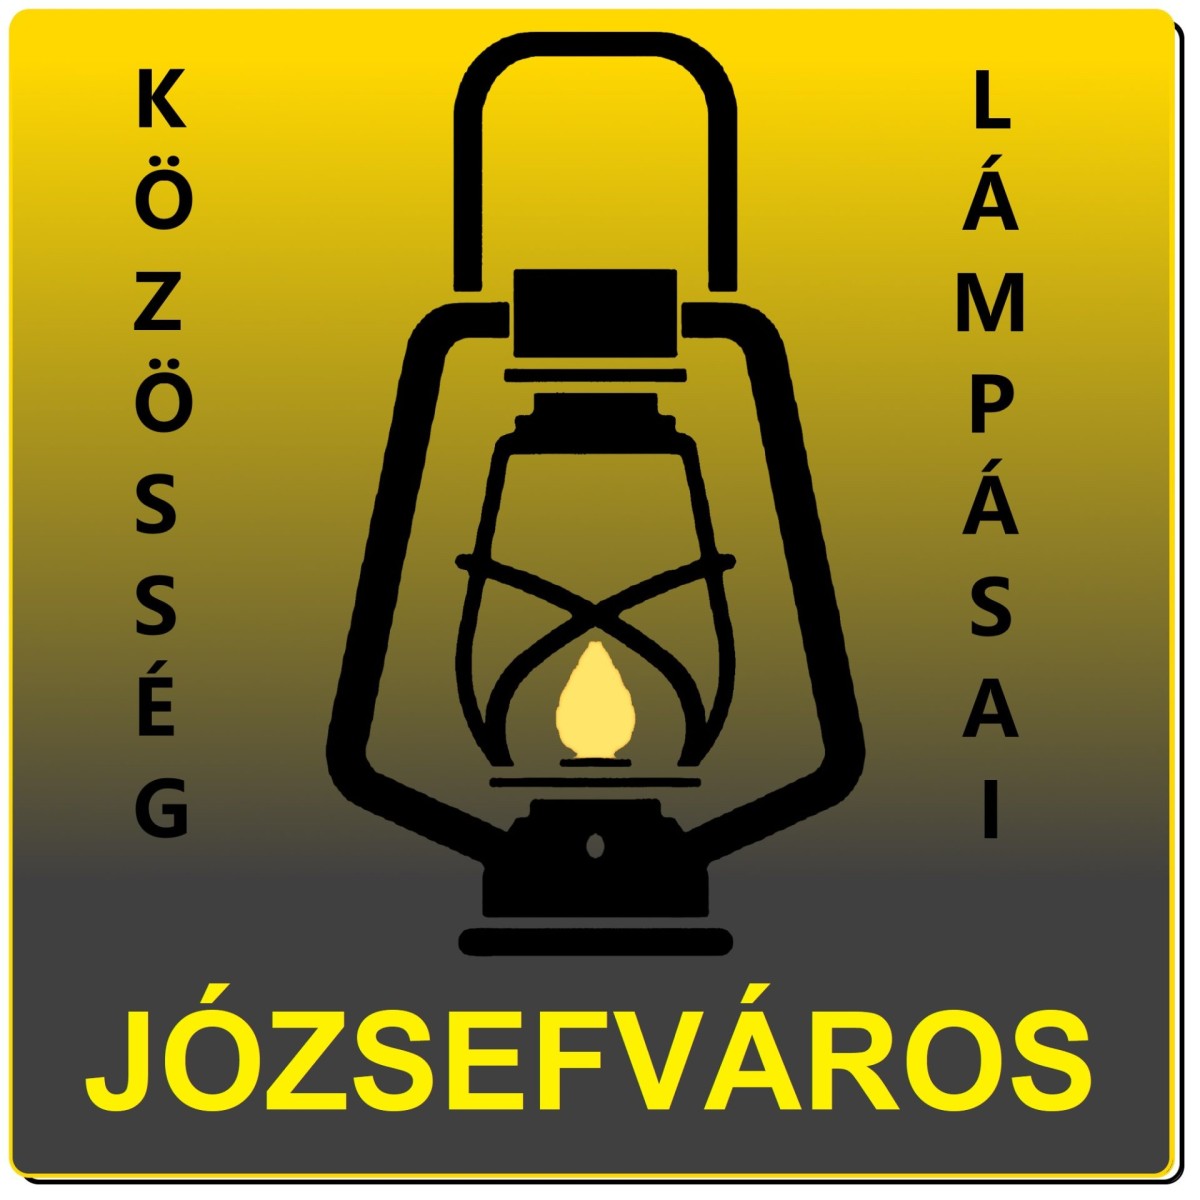 A józsefvárosi Lámpás klub logója